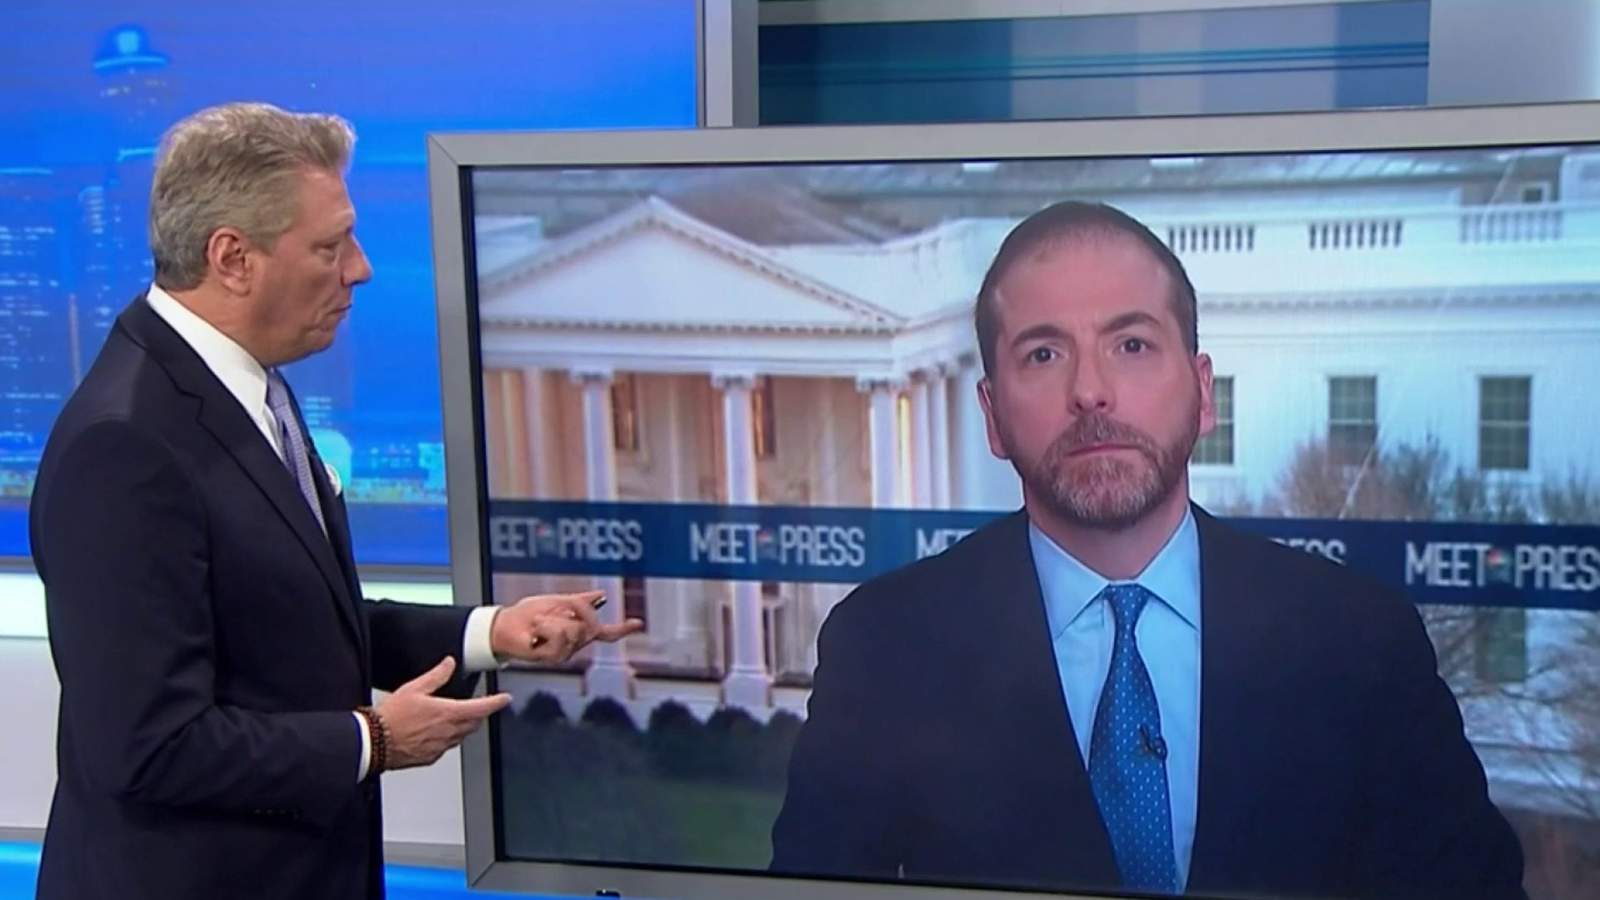 WATCH: Local 4’s Devin Scillian, NBC’s Chuck Todd discuss politics ahead of primary